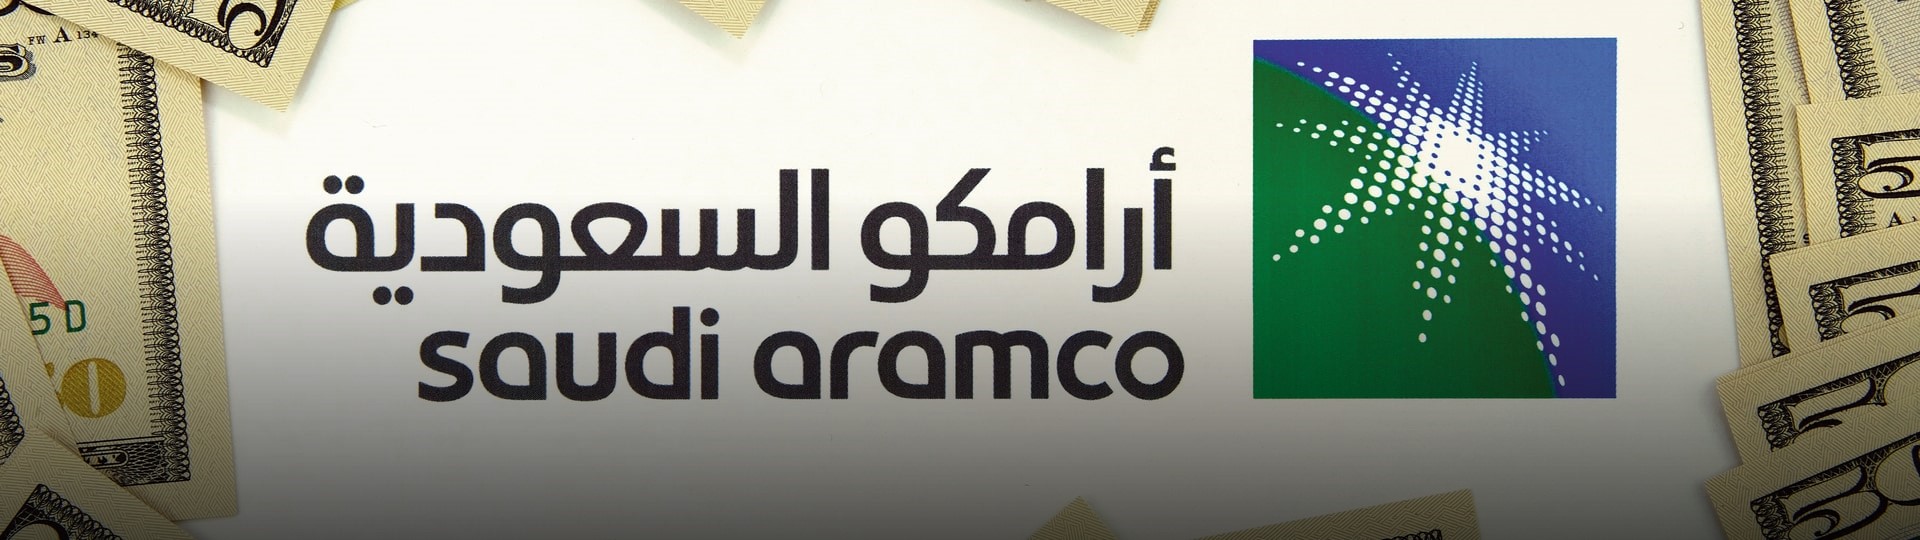 Saúdskoarabský ropný gigant Aramco zvýšil čtvrtletní zisk o 30 procent